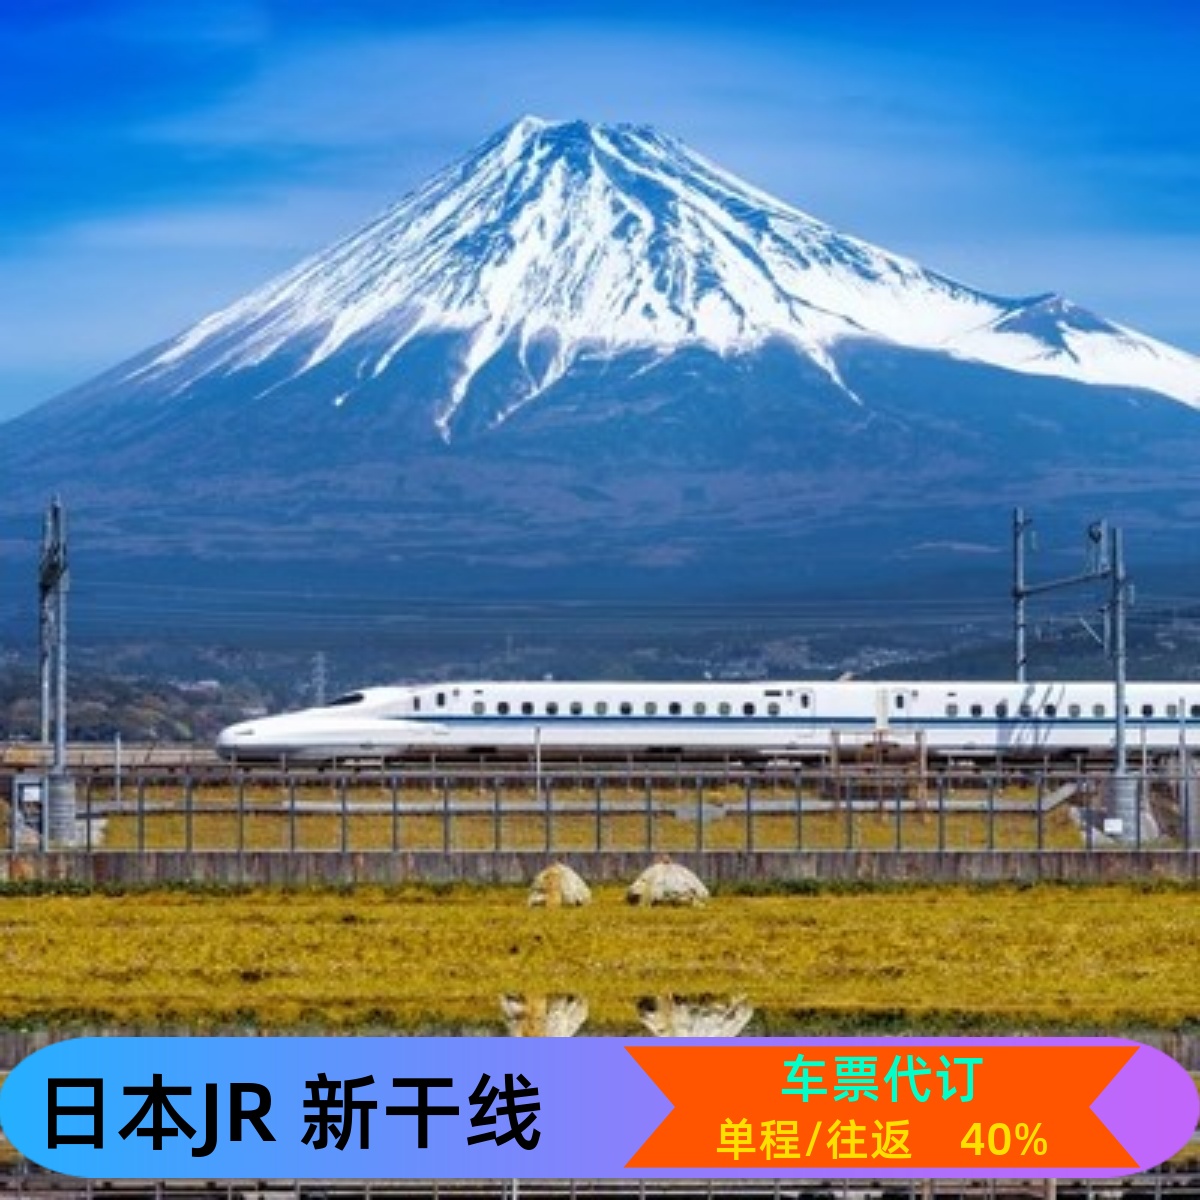 日本JR新干线车票预订东京-新大阪-京都-博多-新神户-新横滨 金泽